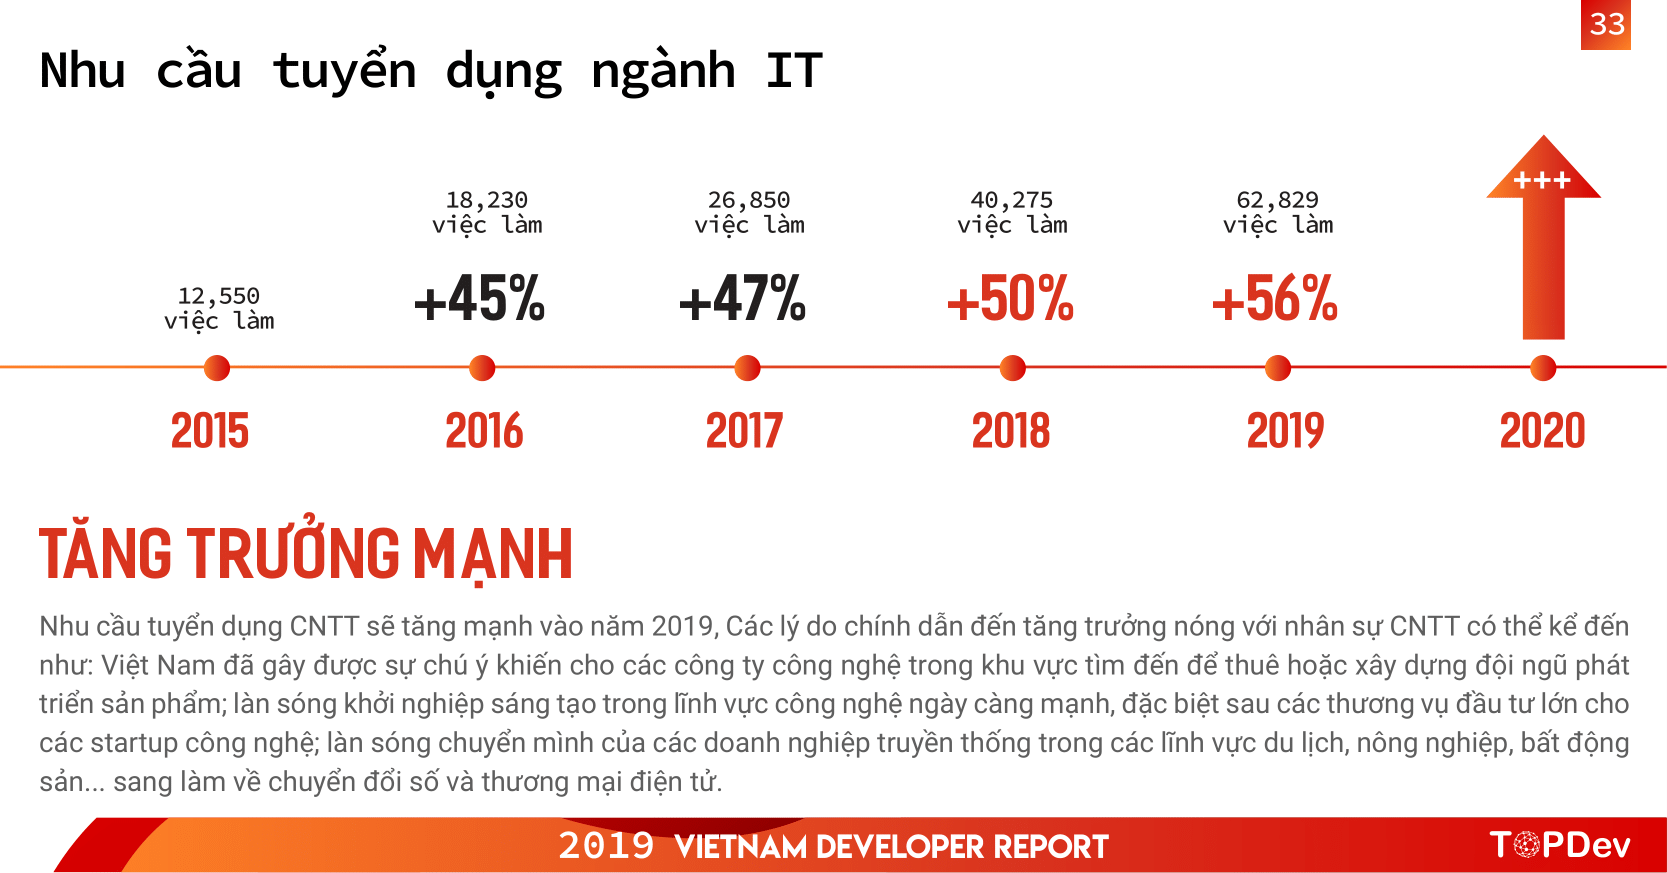 nhân lực IT ở Việt Nam